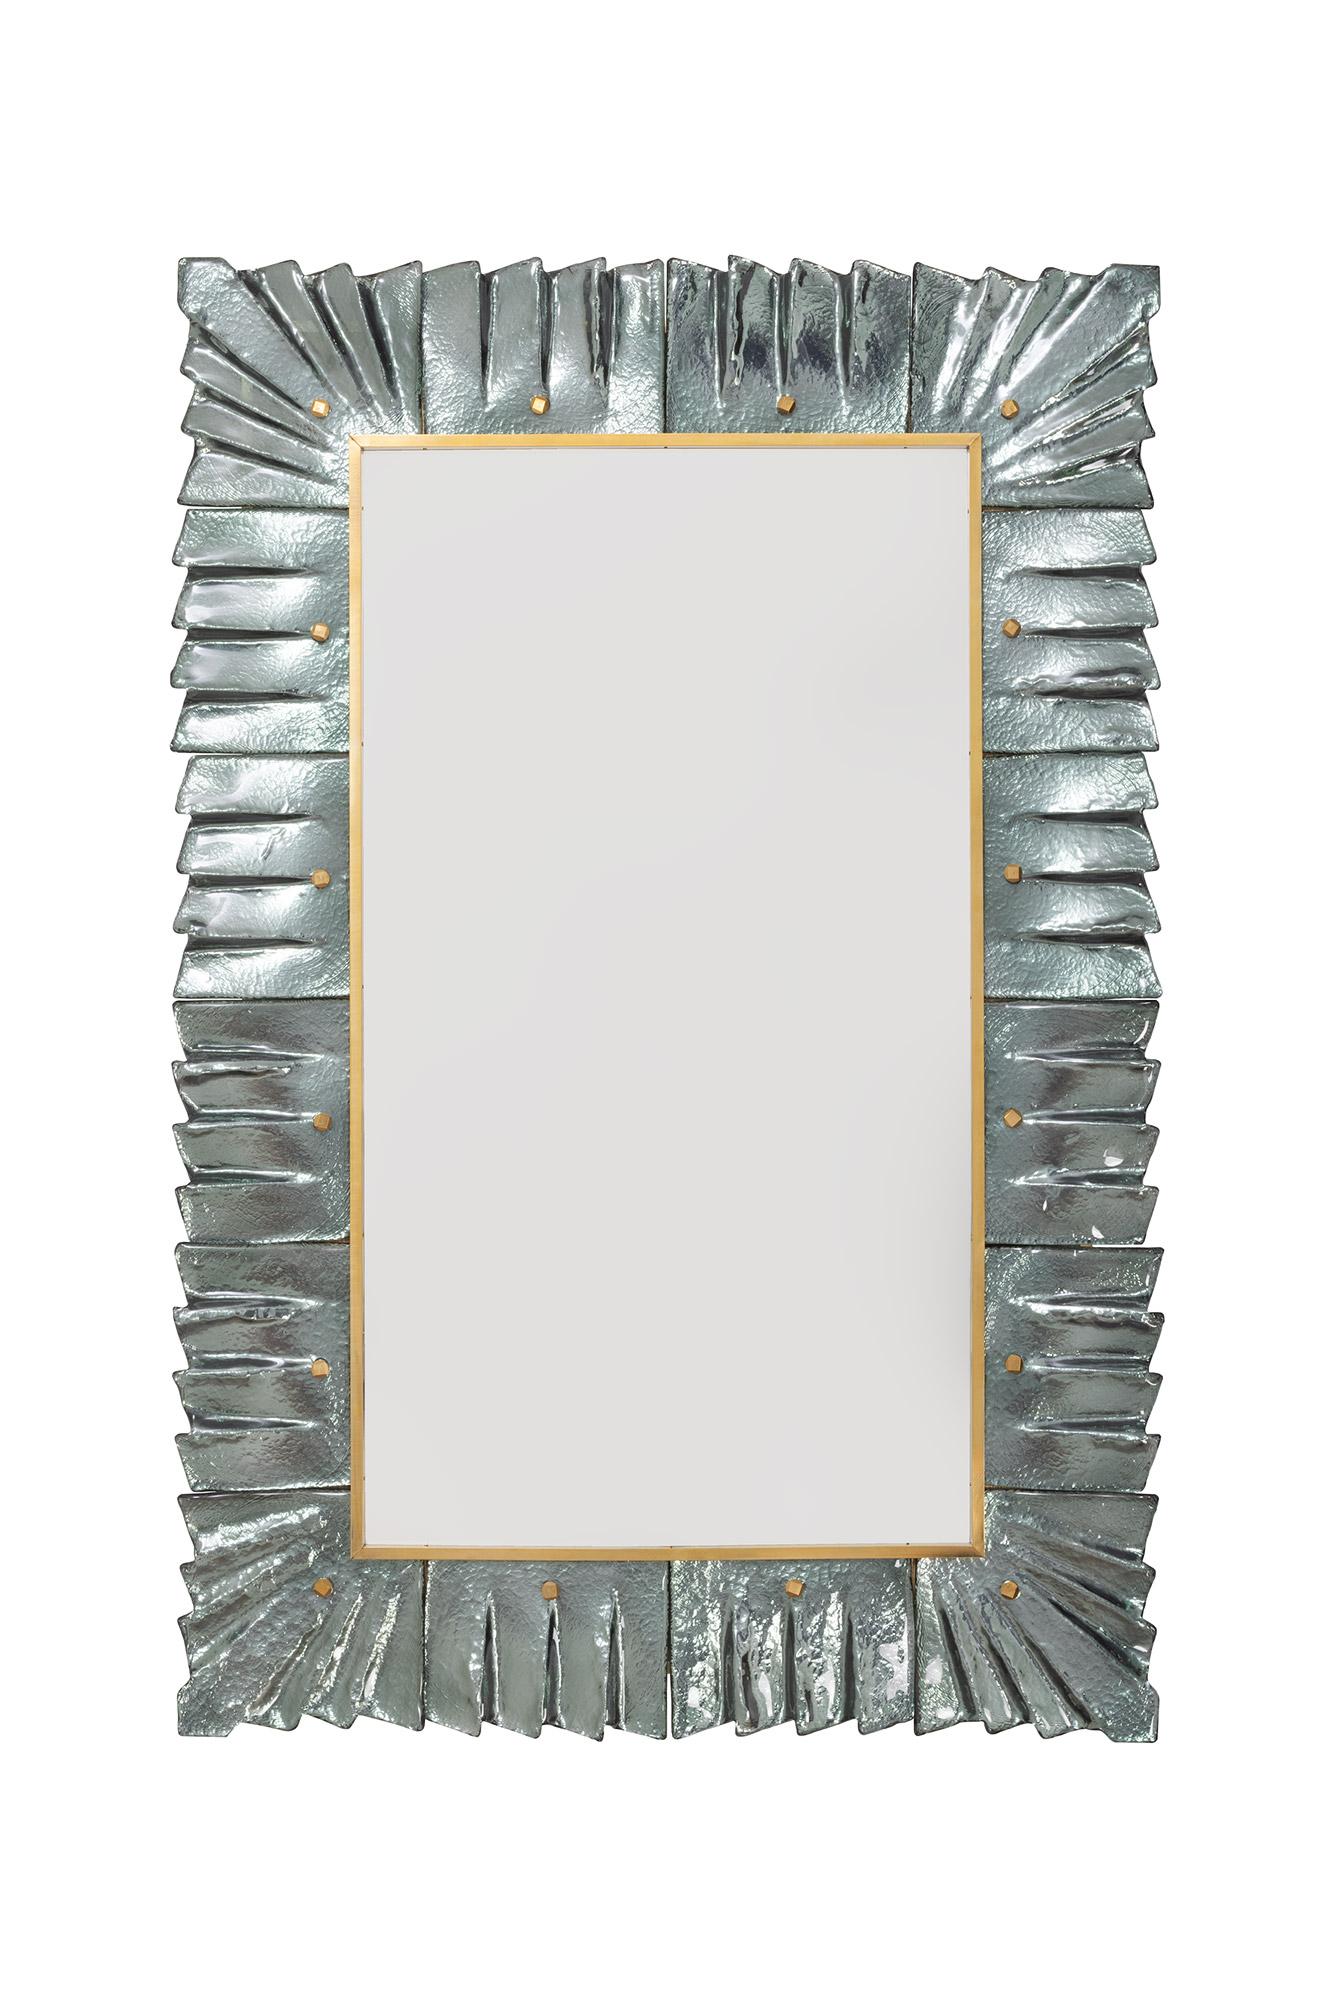 Paire de miroirs encadrés en verre vert de mer sarcelle de Murano, en stock.
Plaque de miroir rectangulaire entourée de carreaux de verre ondulés de couleur vert de mer retenus par des cabochons en laiton. 
Fabriqué à la main par une équipe